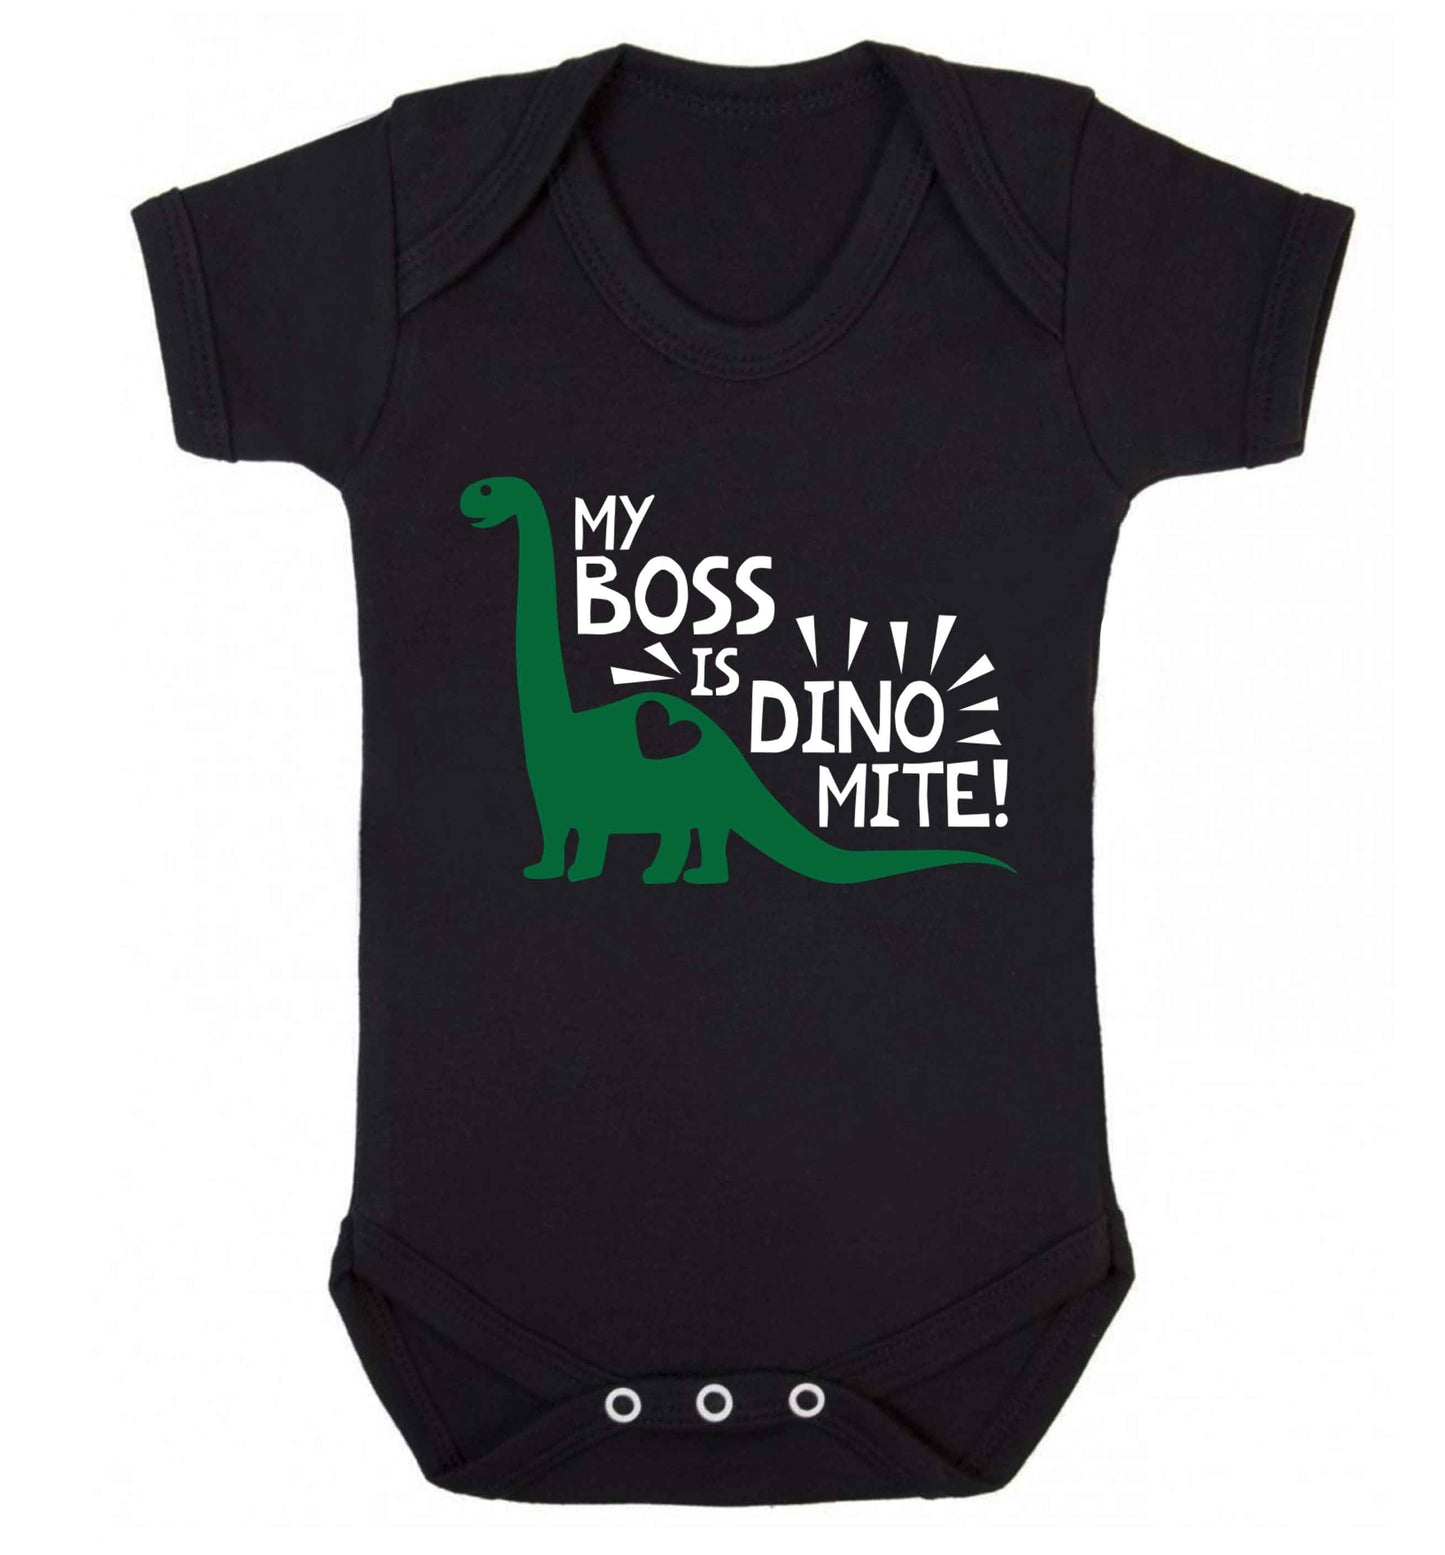 My boss is dinomite! Baby Vest black 18-24 months